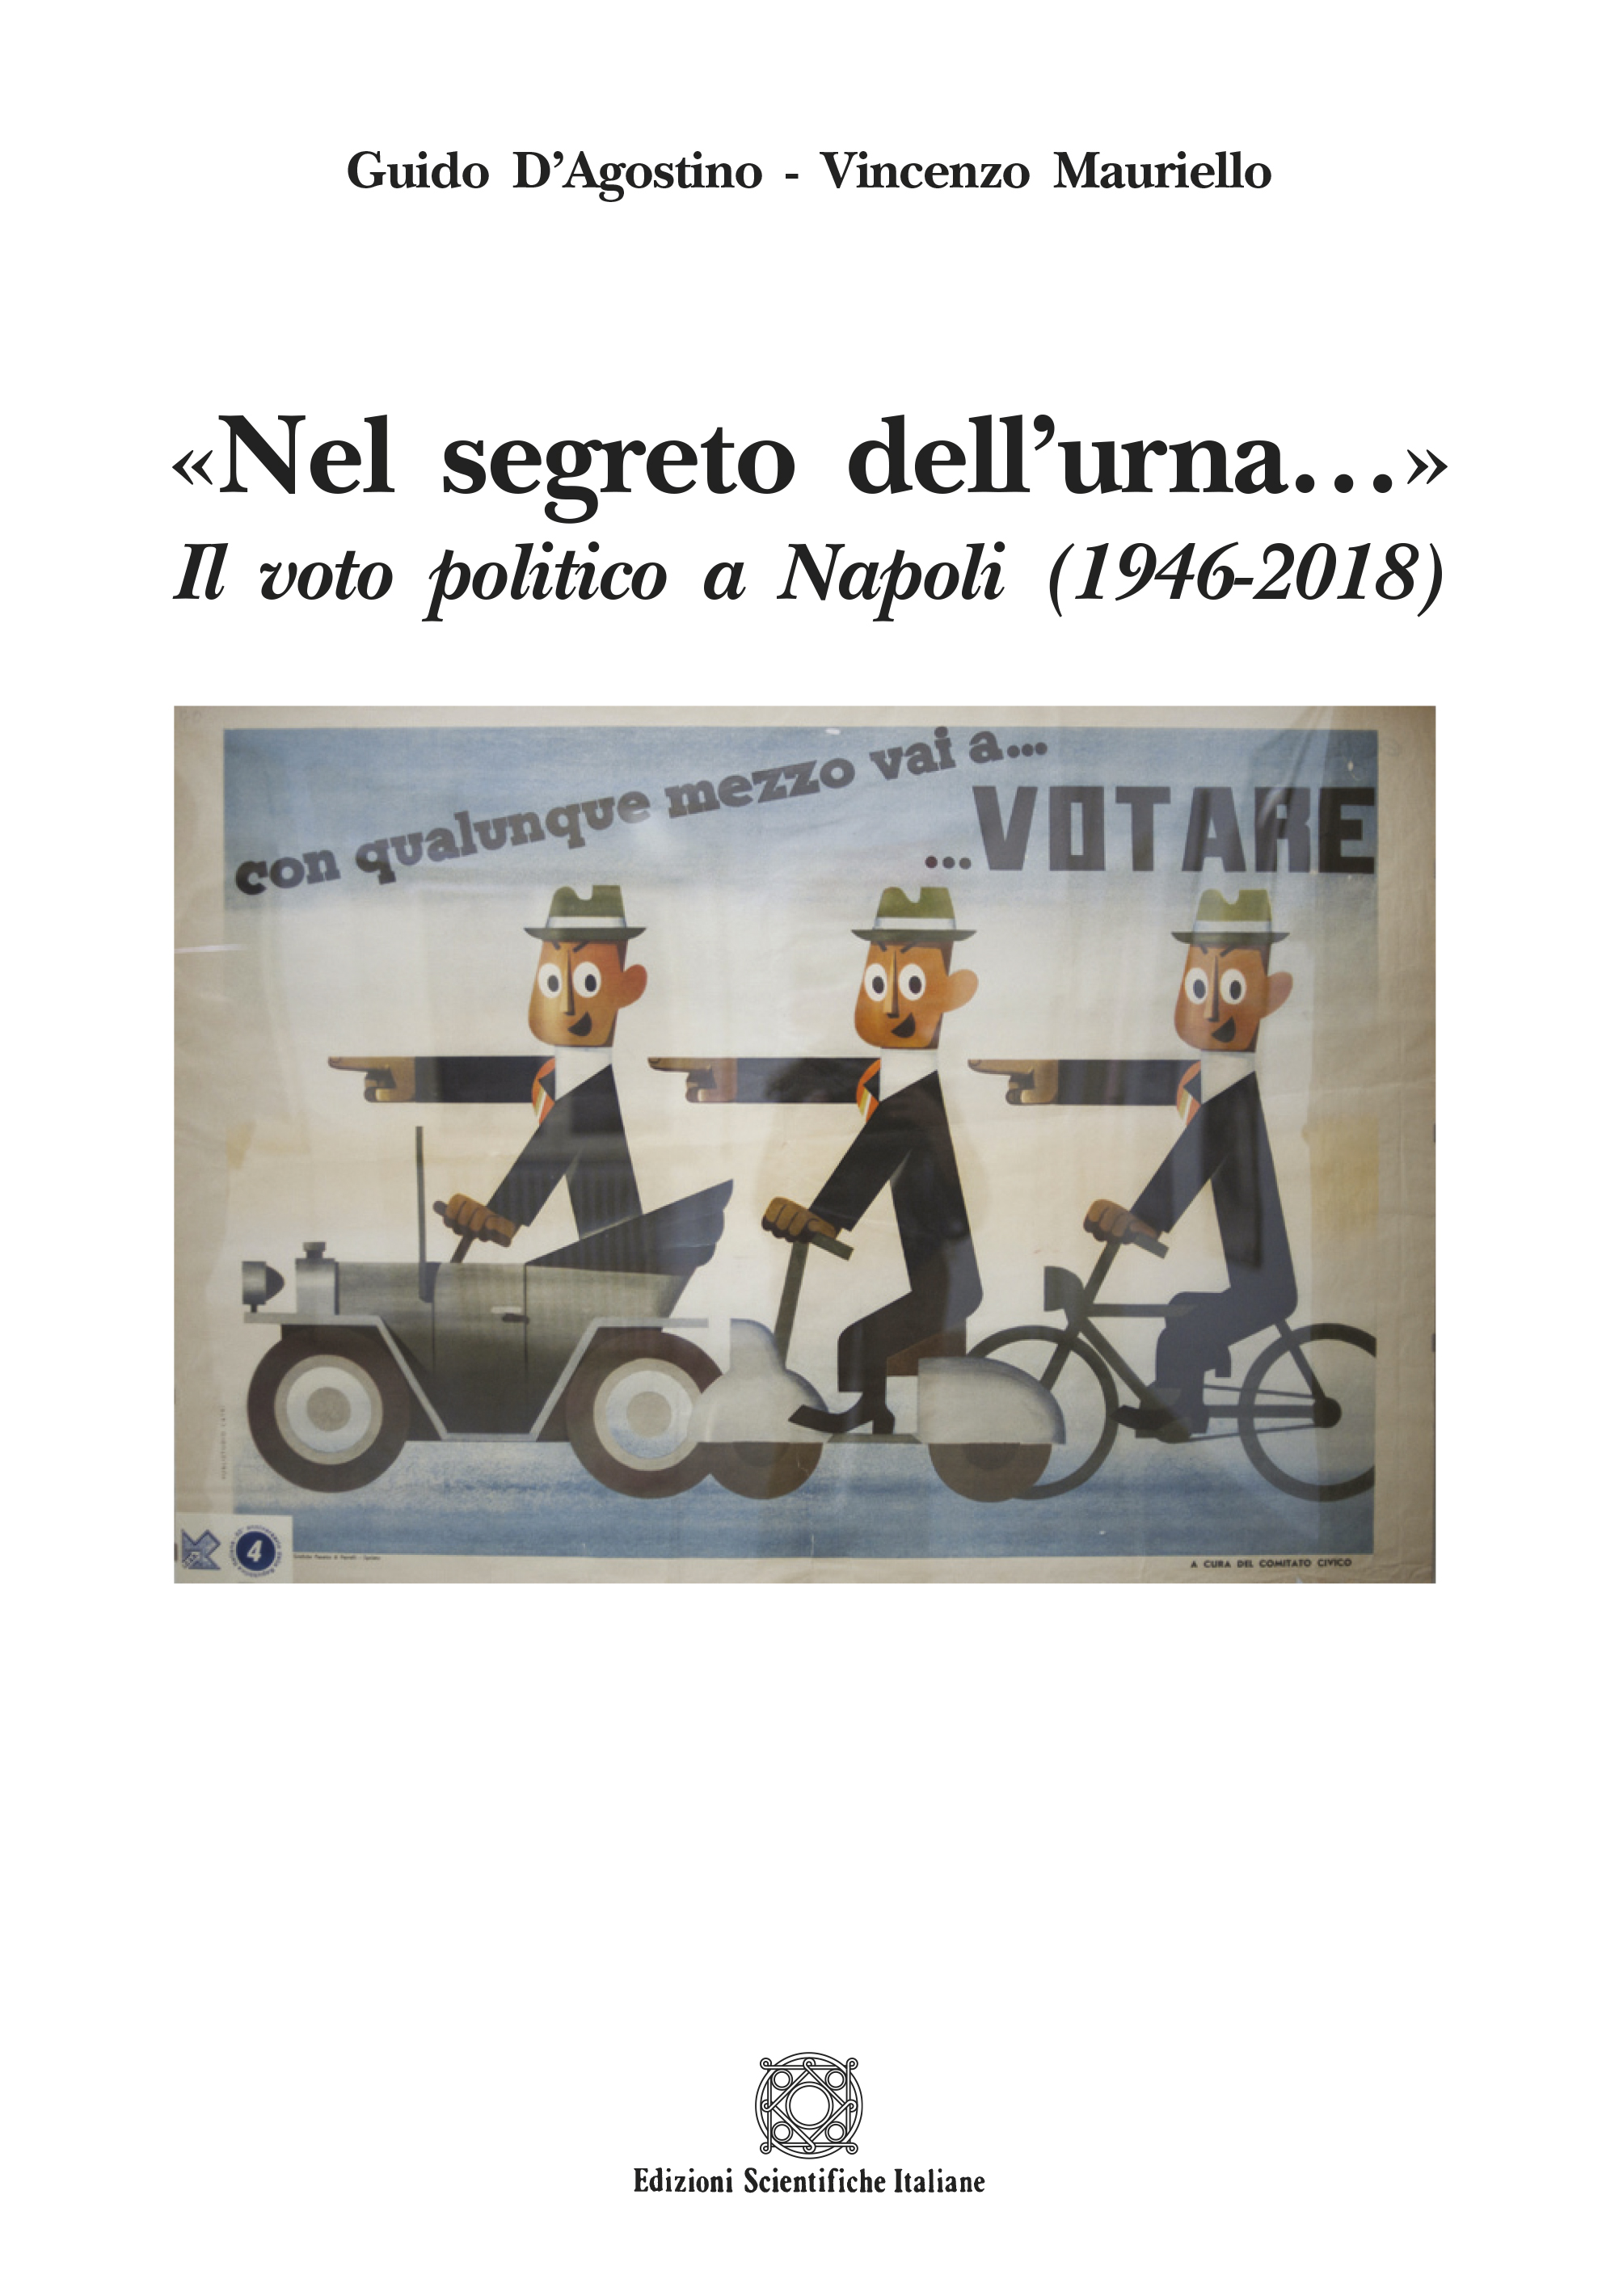 «Nel segreto dell’urna…» Il voto politico a Napoli  (1946-2018)  di Guido D’Agostino e Vincenzo Mauriello